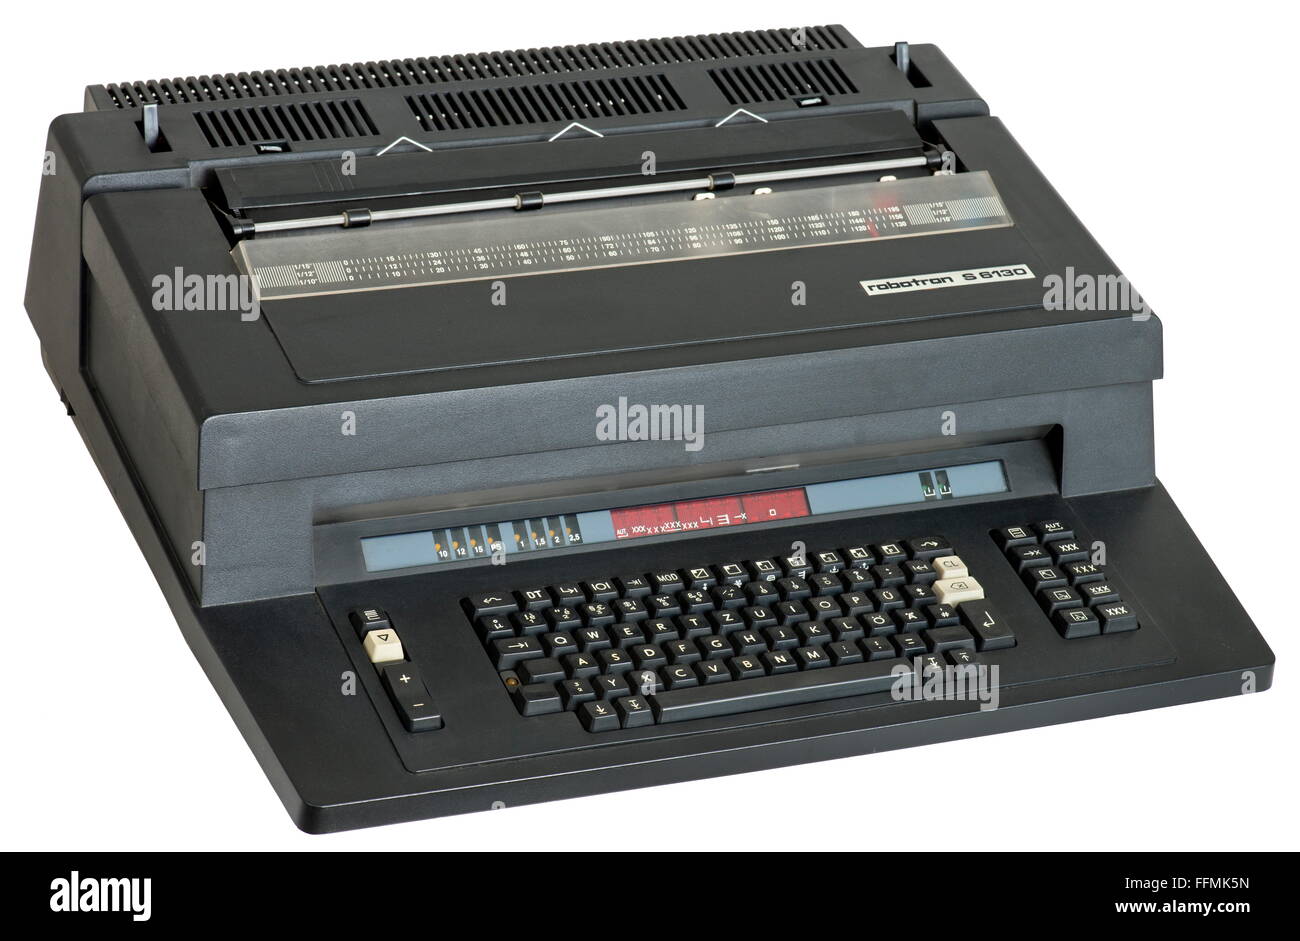 Electronique, machine à écrire électrique Robotron S6130, droits supplémentaires-Clearences-non disponible Banque D'Images